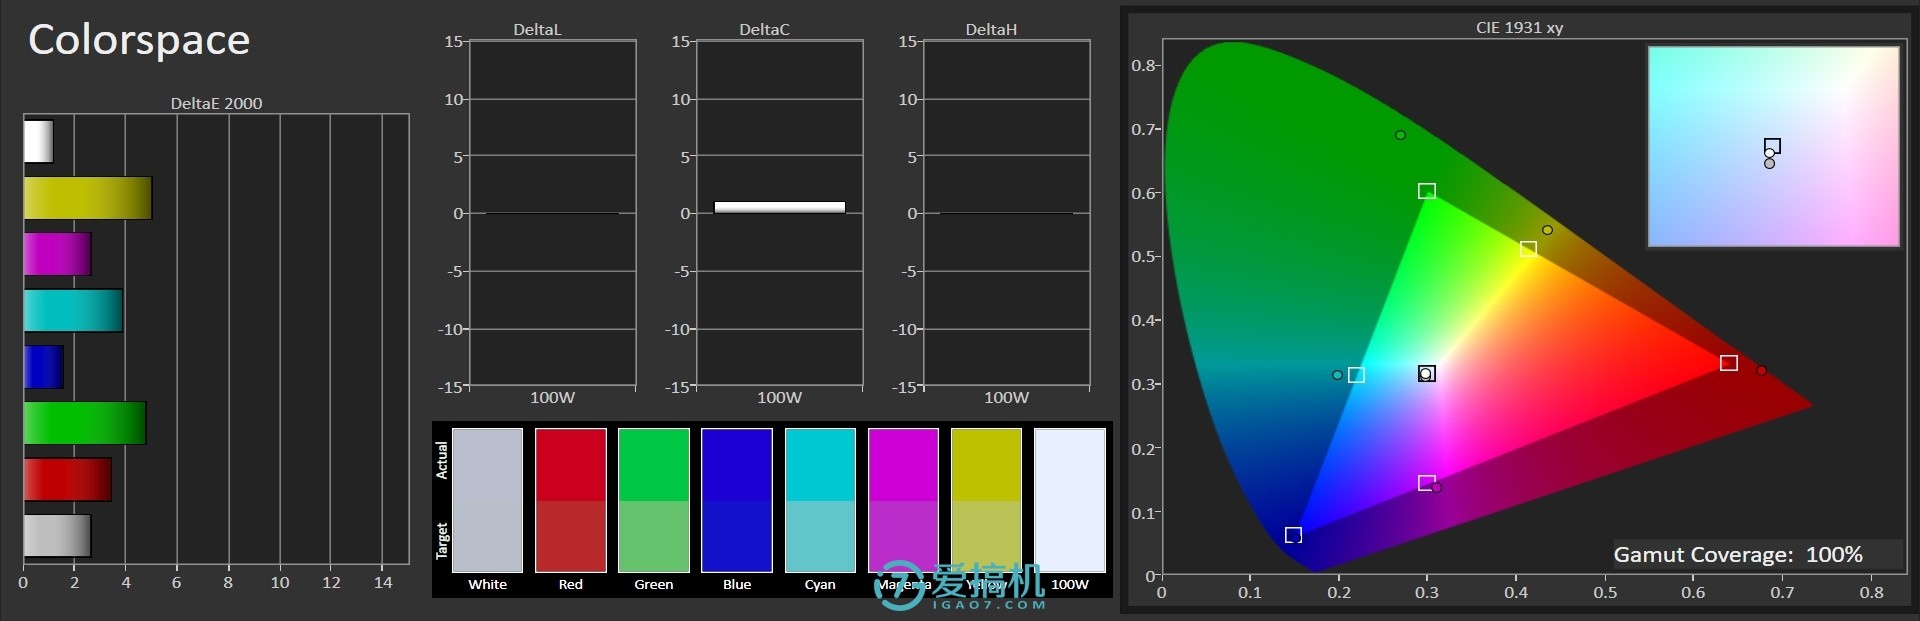 IMX363+光学防抖+骁龙710+LCD屏 诺基亚X7评测